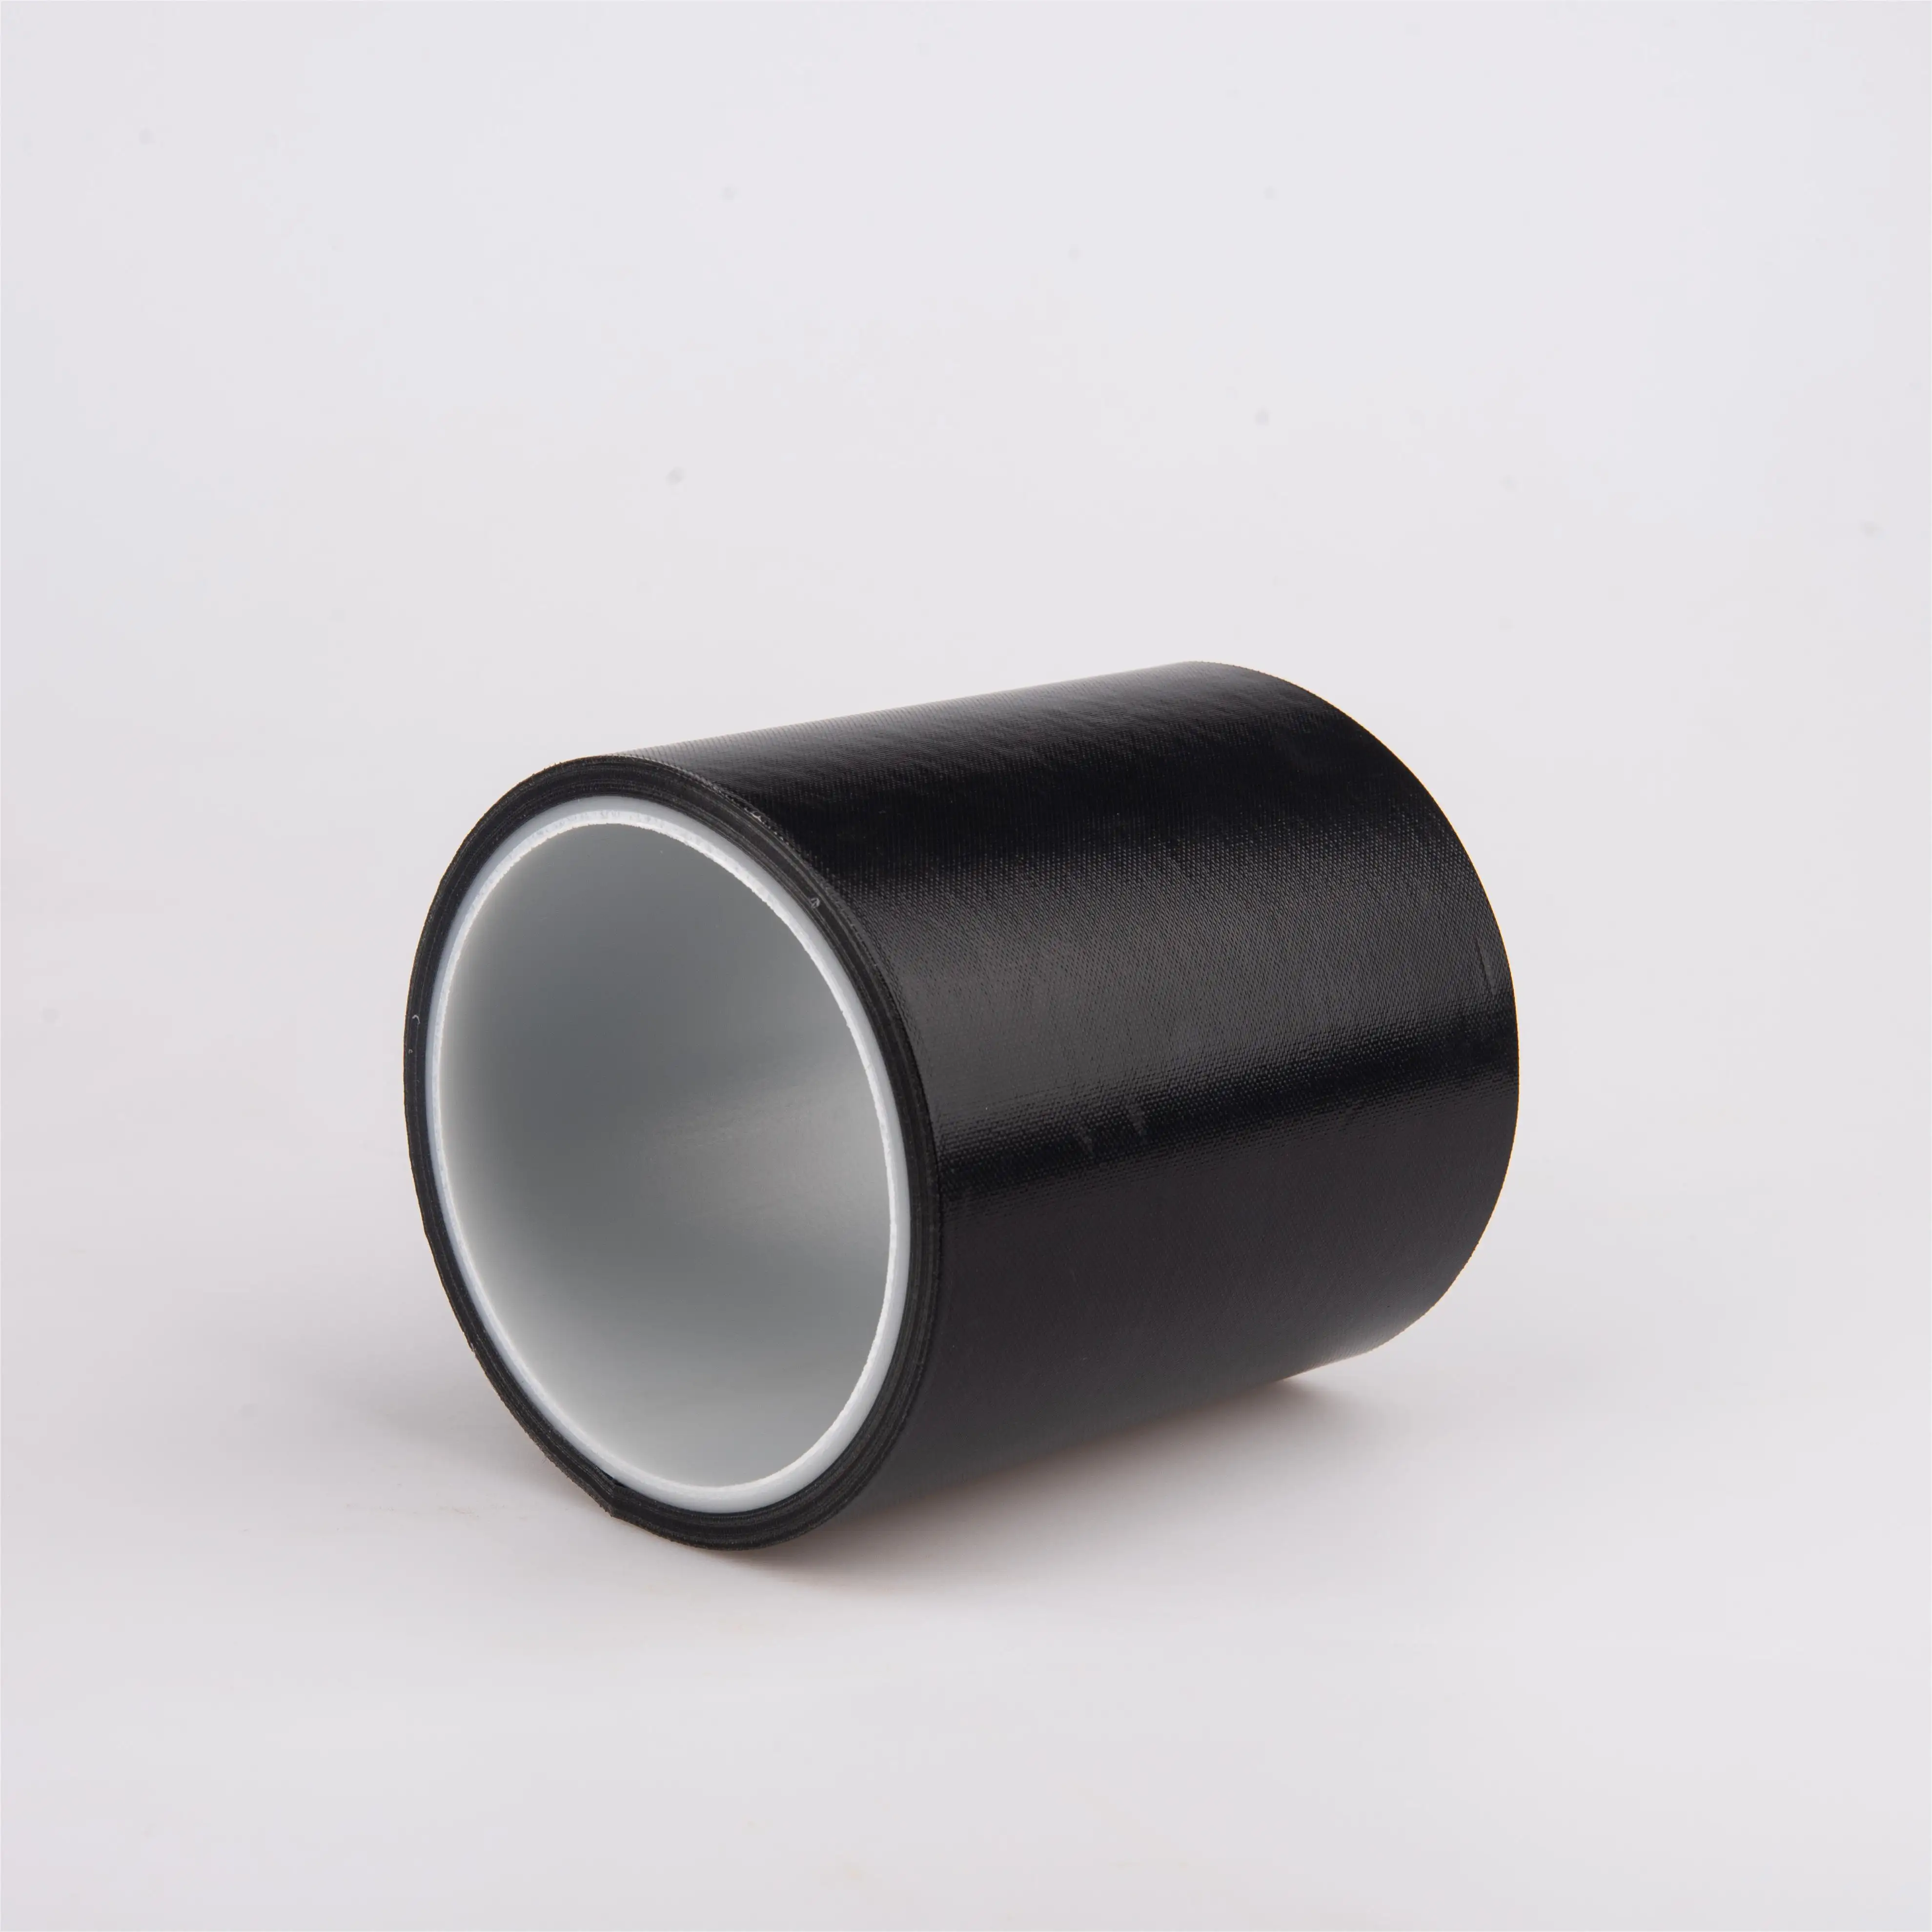 1 amostra grátis de Ptfe de Teflon e fitas adesivas de silicone à prova d'água cor preta com máquinas de selagem de cola